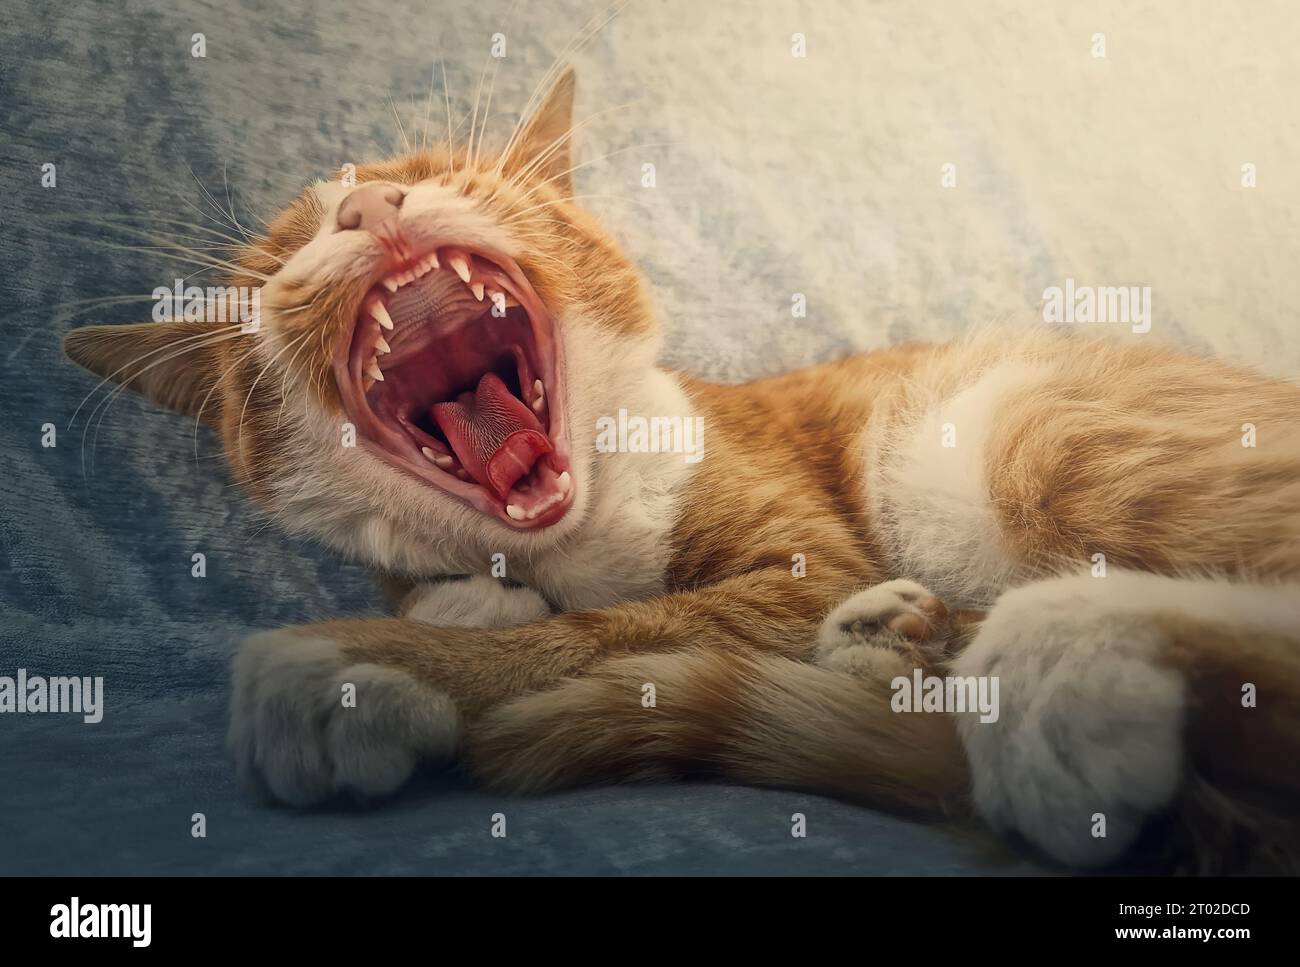 Ritratto ravvicinato del sonnolento gatto arancio che sbadiglia. Ginger kitten fa un pisolino al chiuso sull'accogliente divano, comodamente seduto Foto Stock